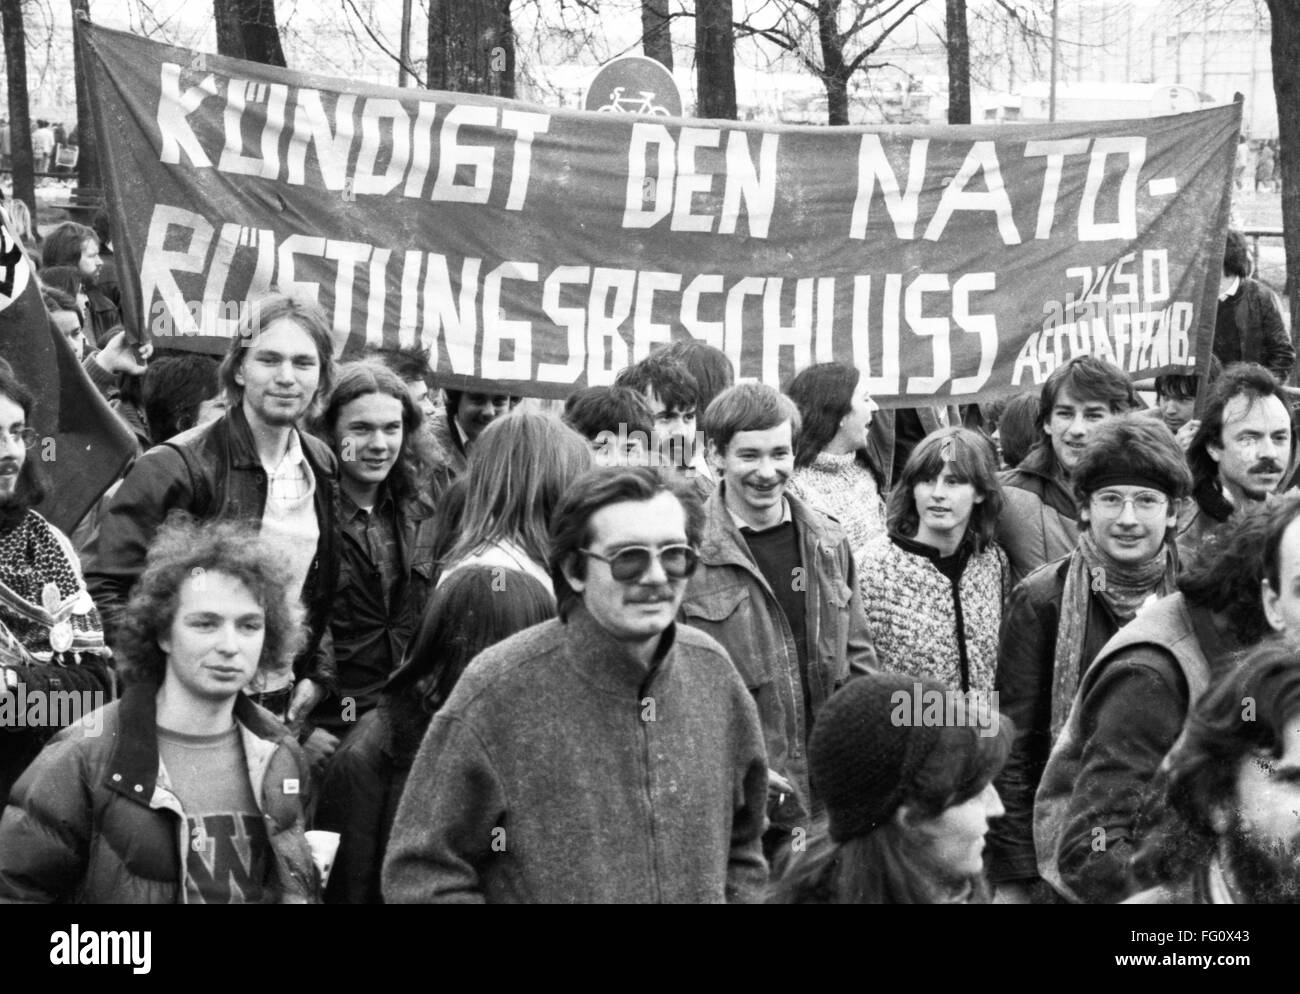 Jusos - giovani socialdemocratici - dimostrare il 17 aprile 1982 a Monaco di Baviera contro la NATO Decisione Double-Track|. Foto Stock